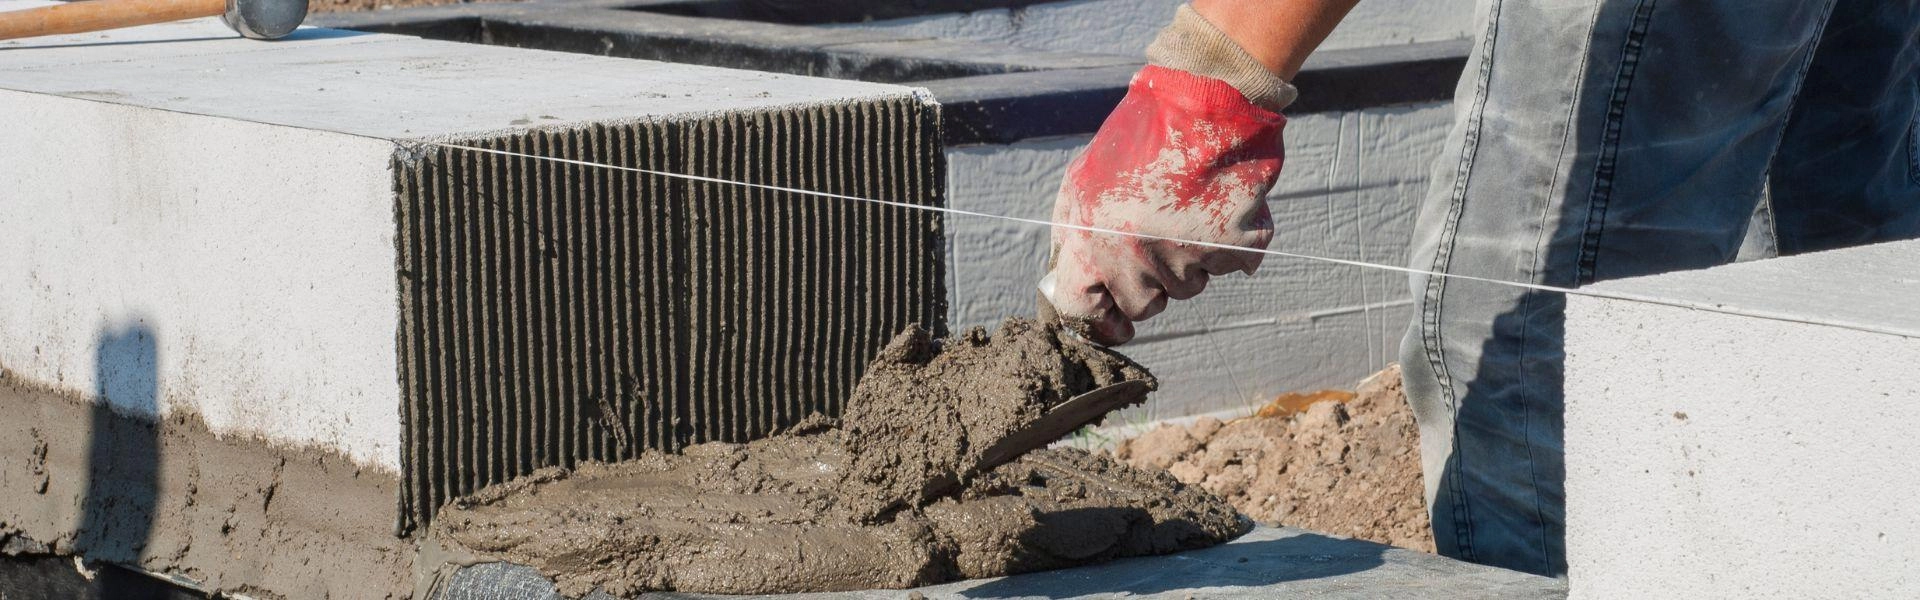 Aproximação da mão de um trabalhador mexendo com cimento e bloco de tijolo.